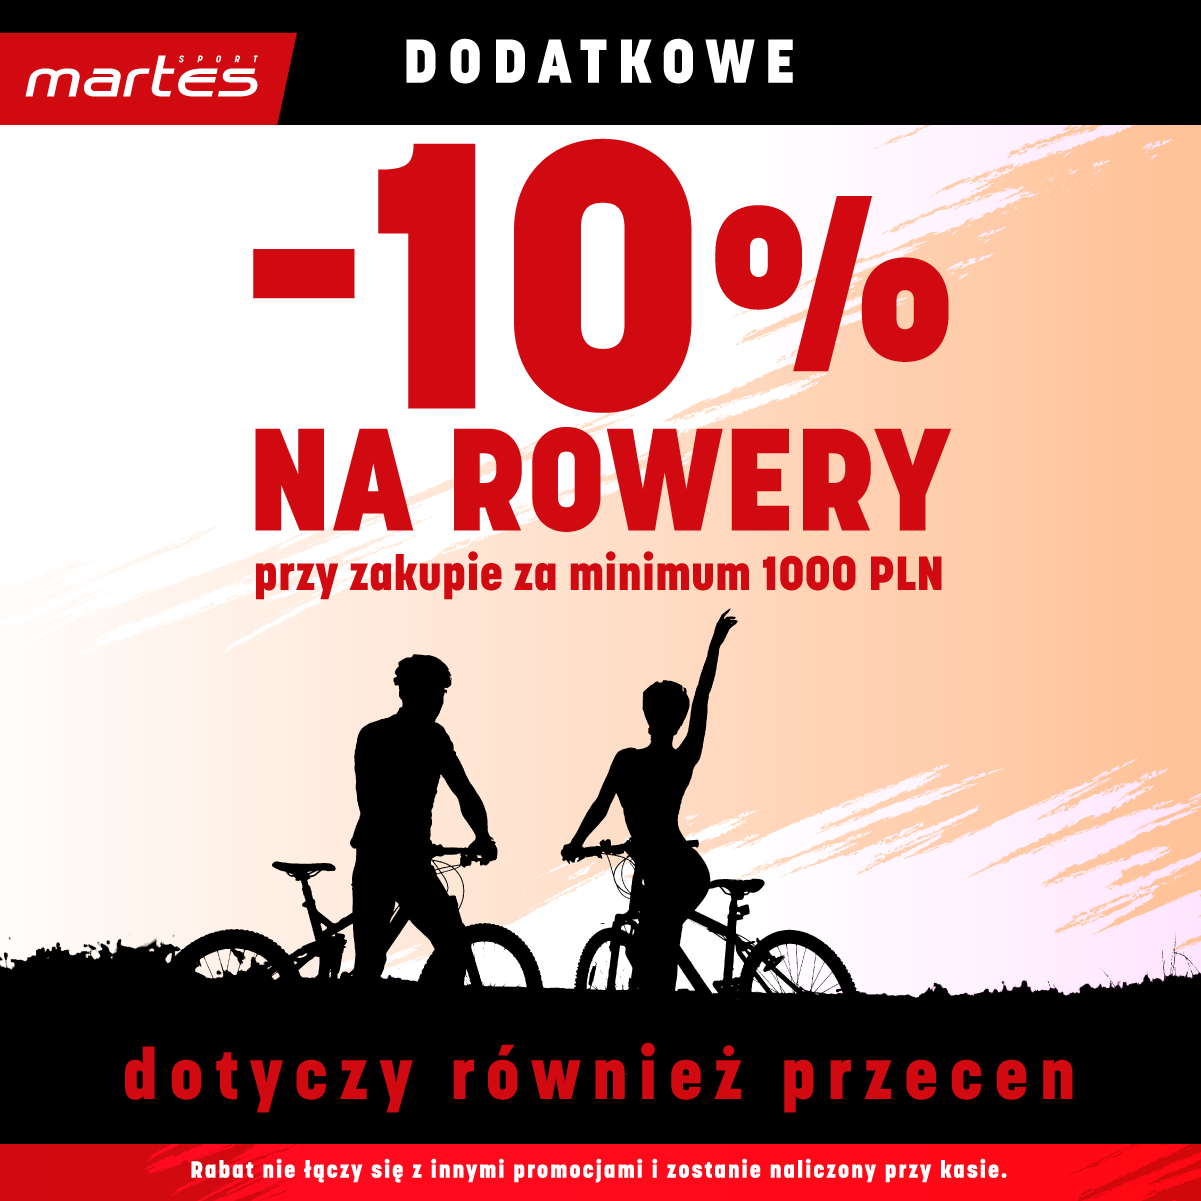 Martes Sport, Dodatkowe -10% na rowery w Martes Sport